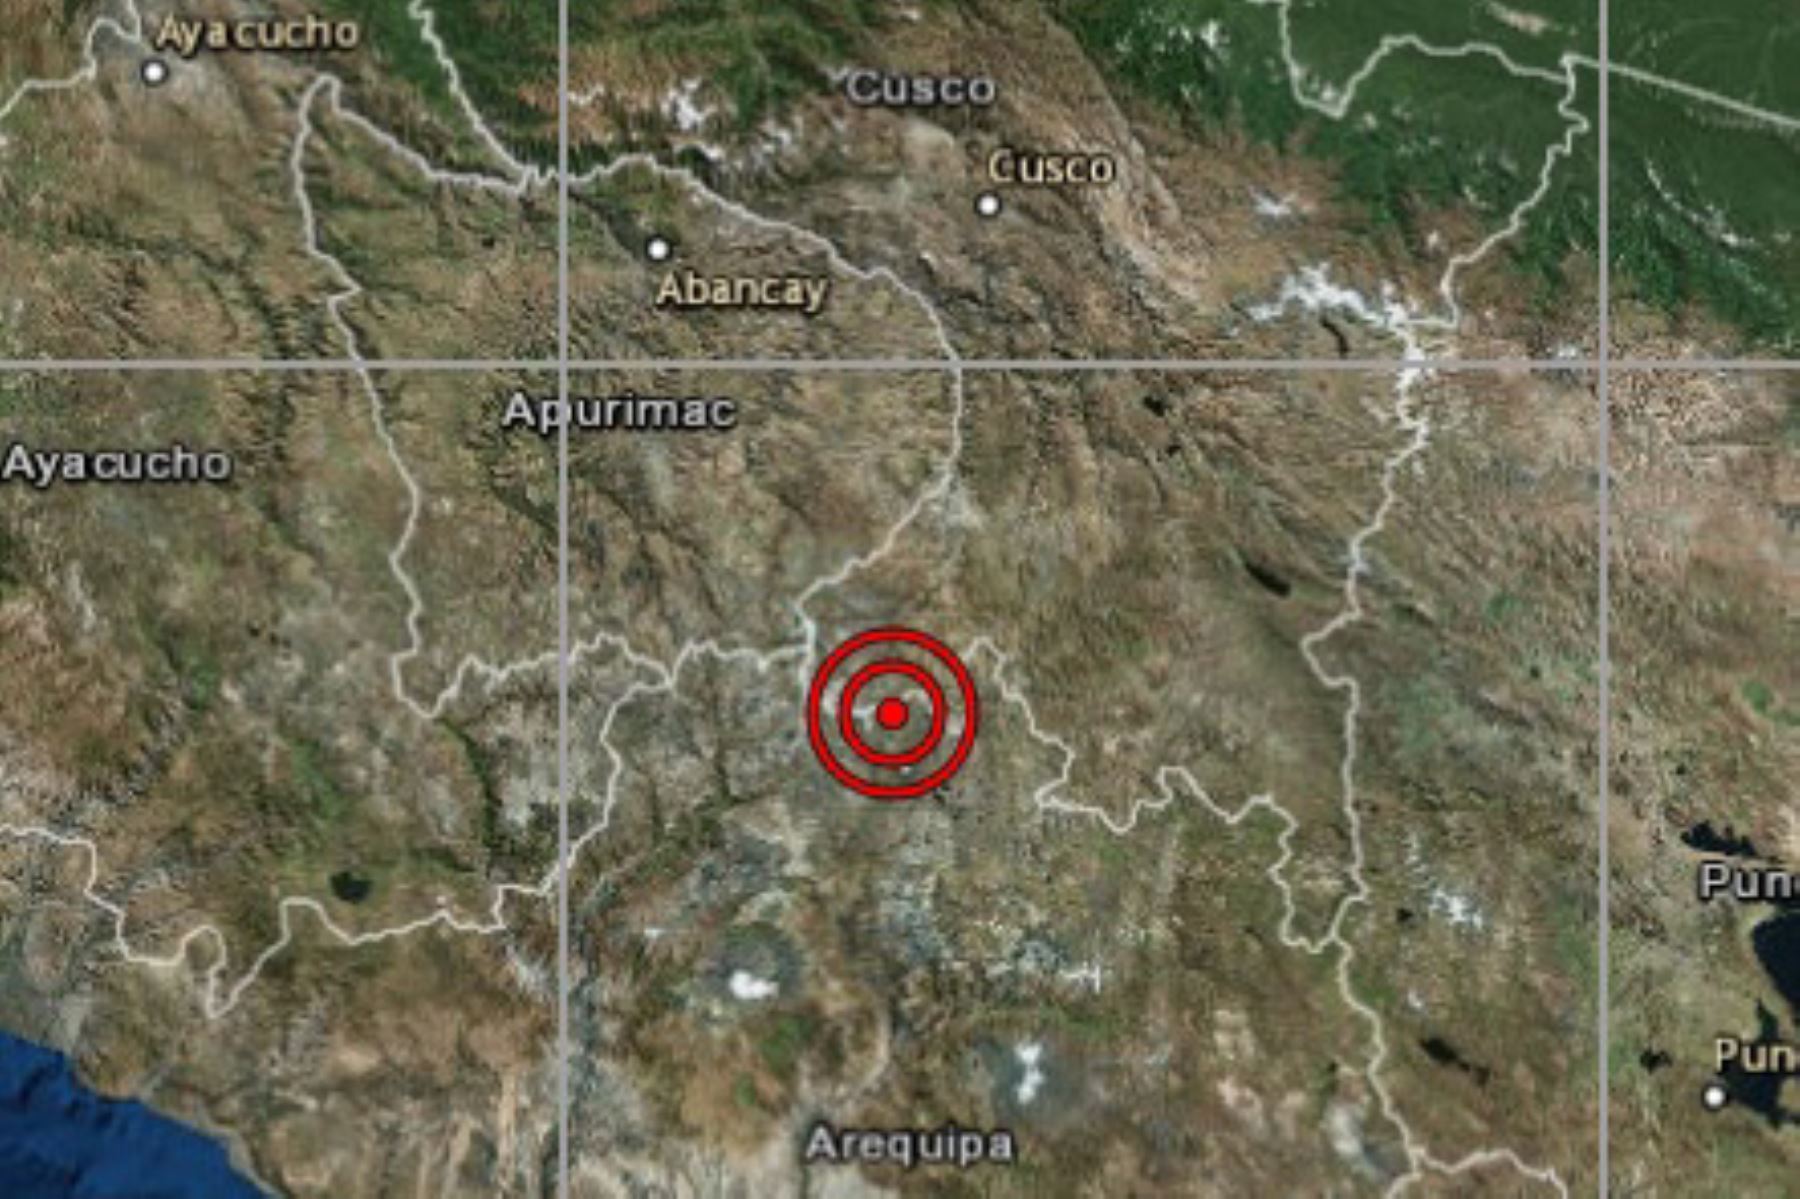 La provincia de Chumbivilcas, región Cusco, soportó un sismo de magnitud 4.3 esta tarde, informó el IGP. Foto: ANDINA/Difusión